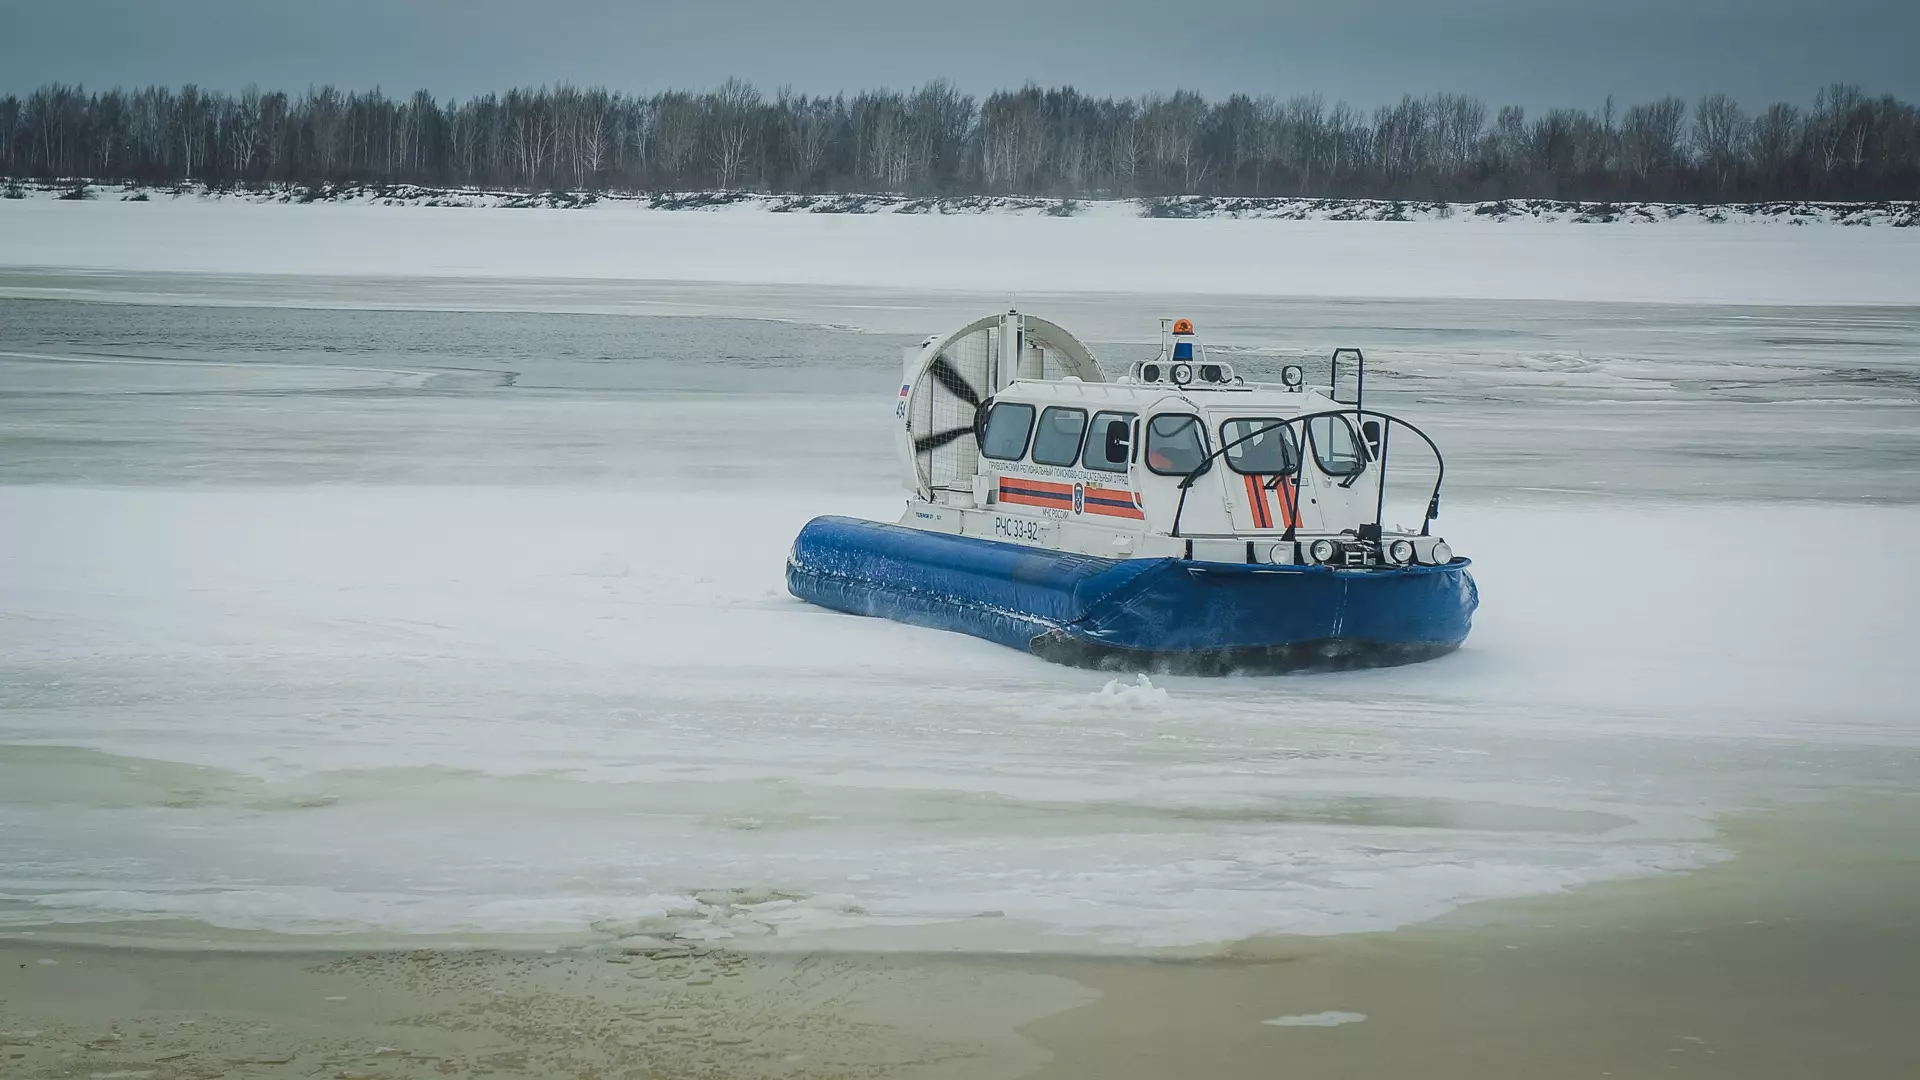 Появились подробности пропажи вертолета МЧС над озером в Карелии